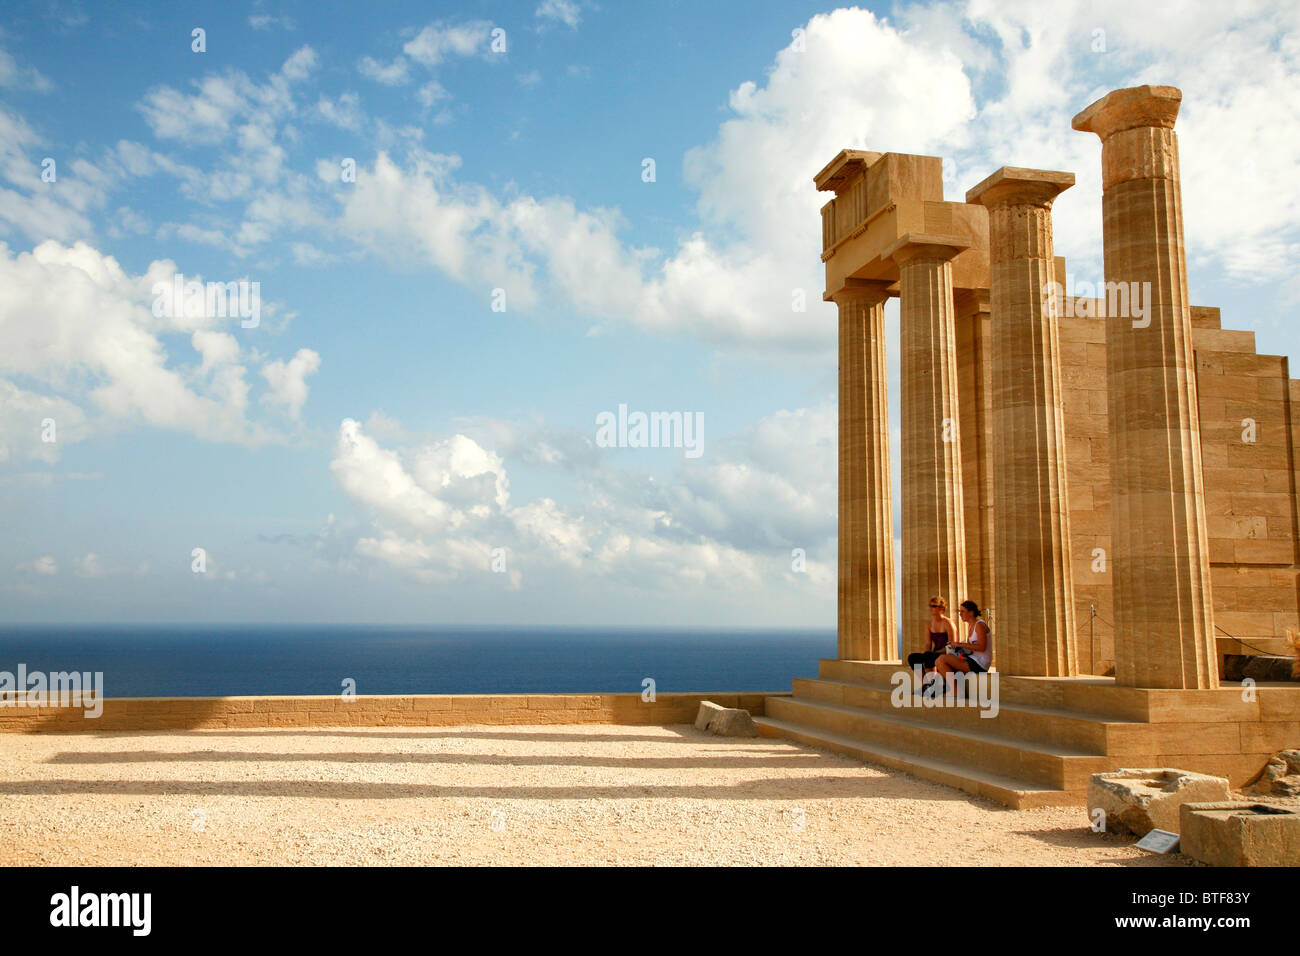 The Acropolis, Lindos, Rhodes, Greece. Stock Photo